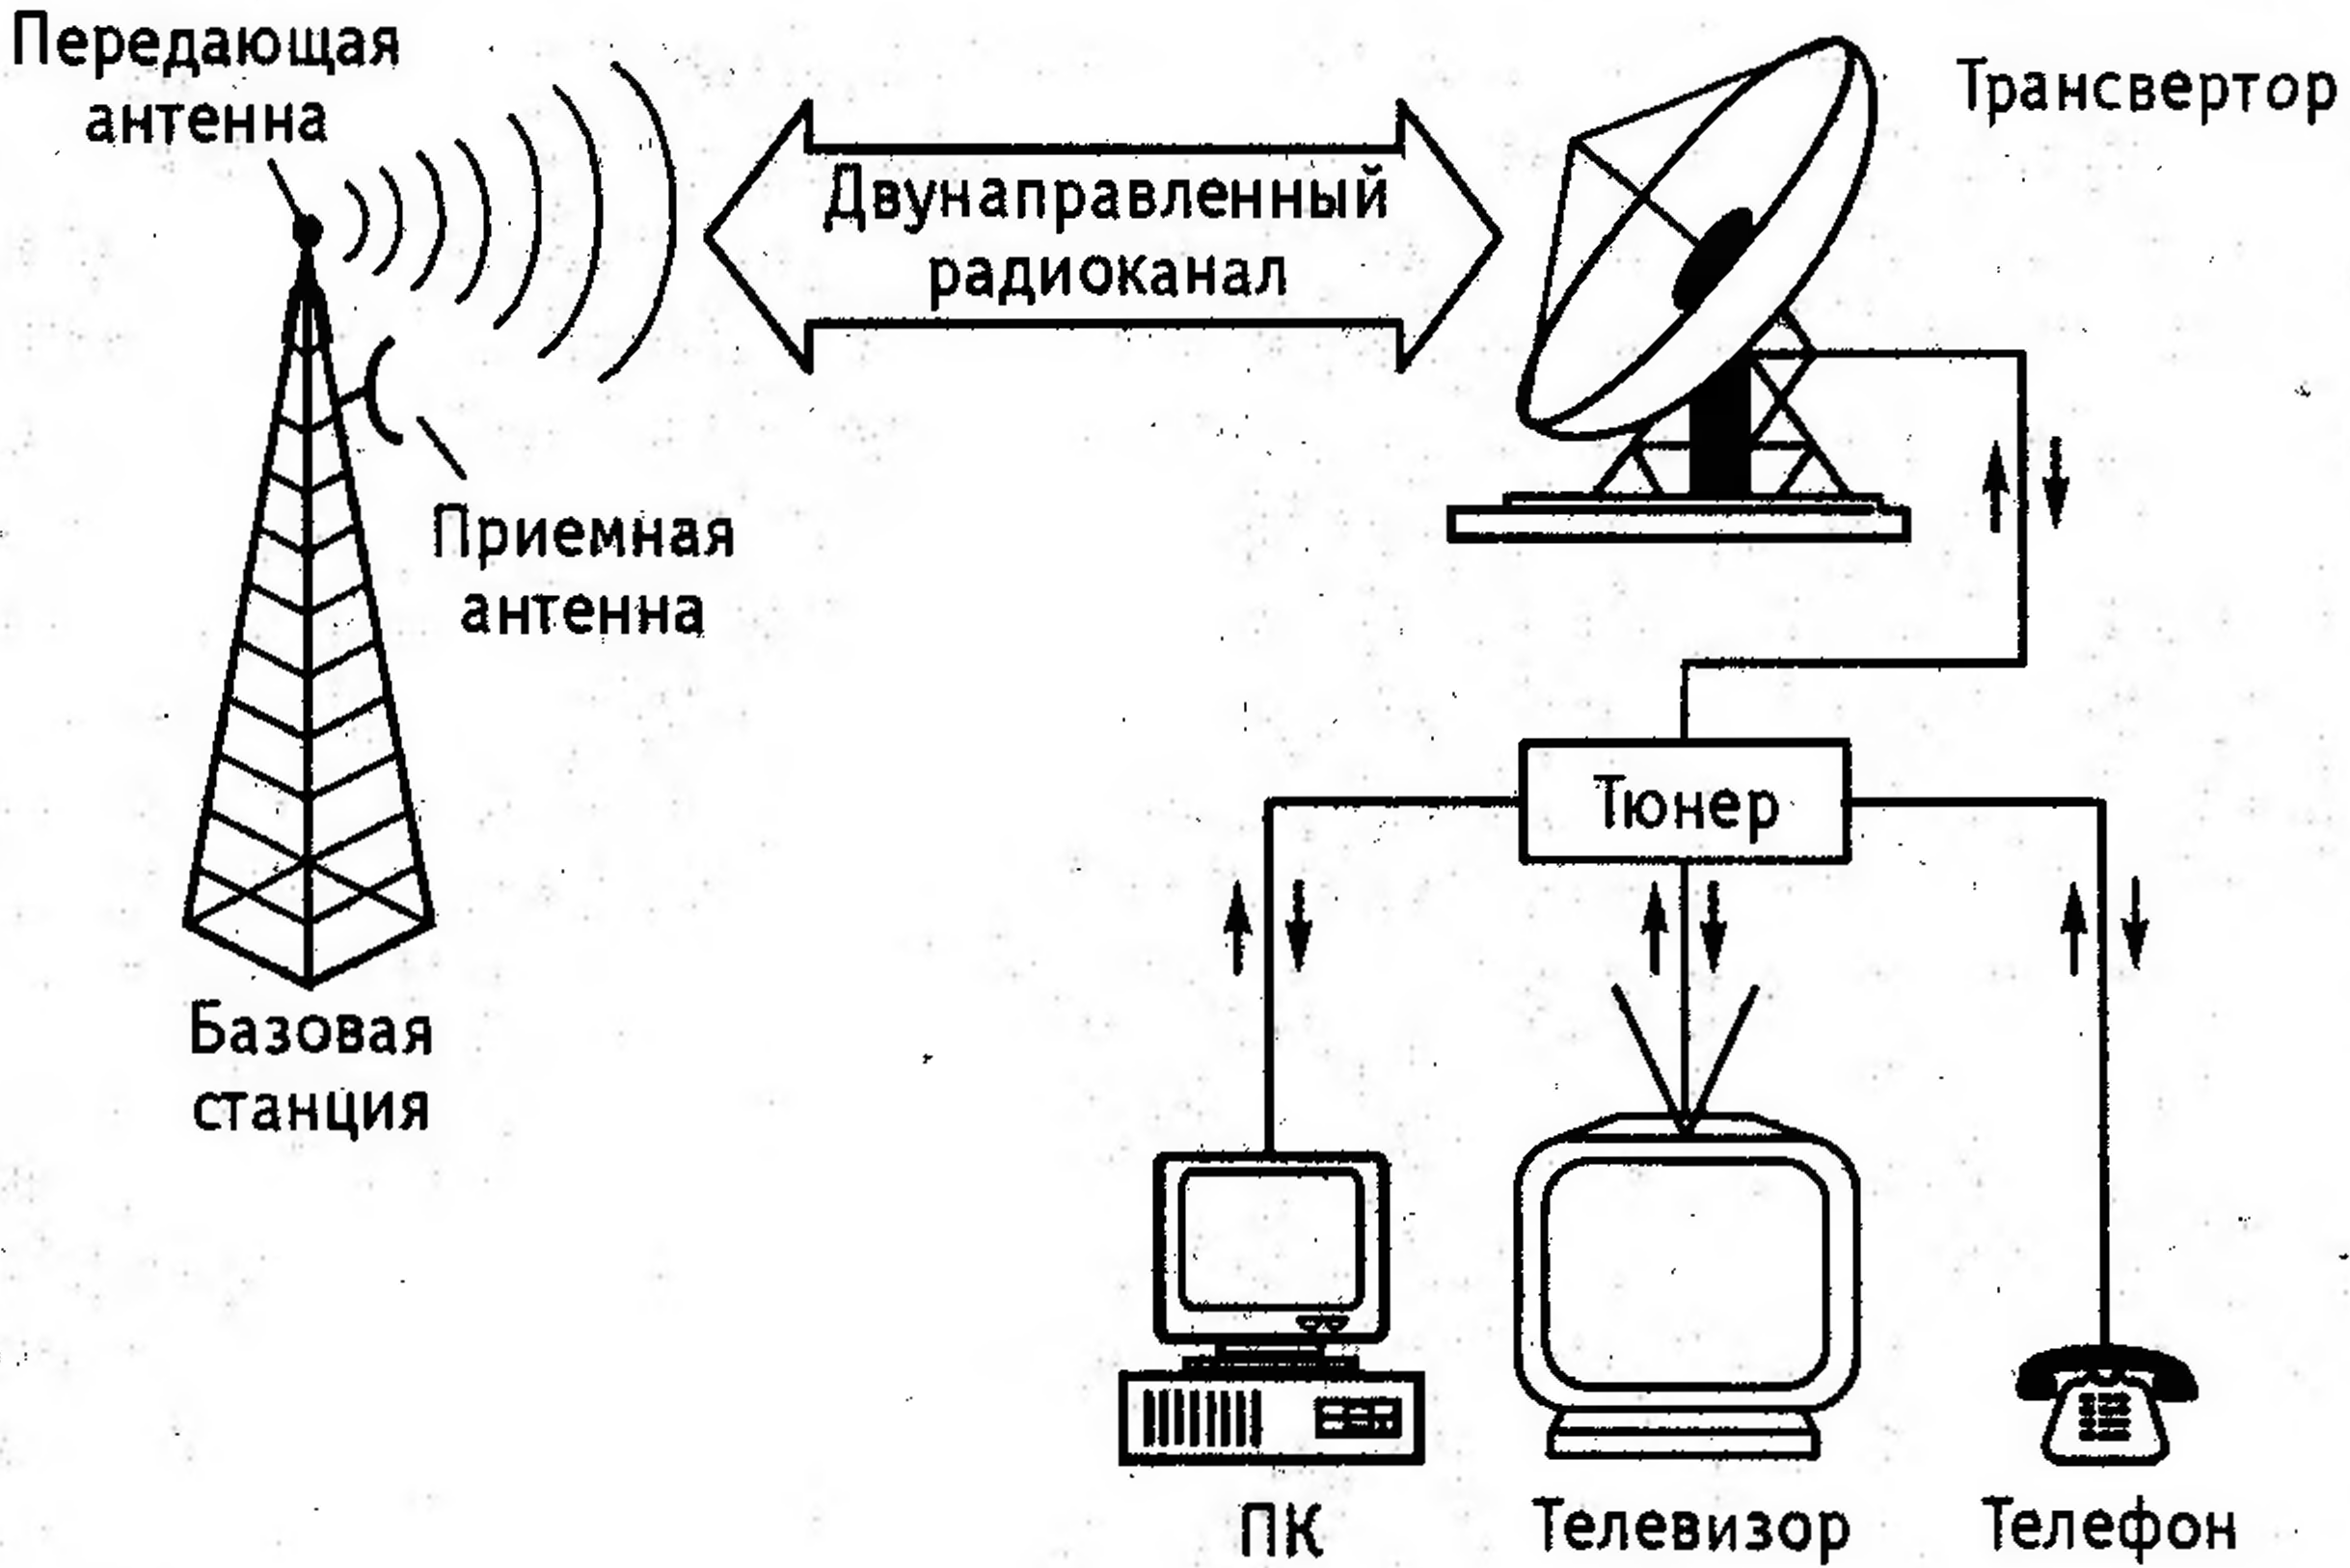 Блок схема передающей радиостанции - 82 фото